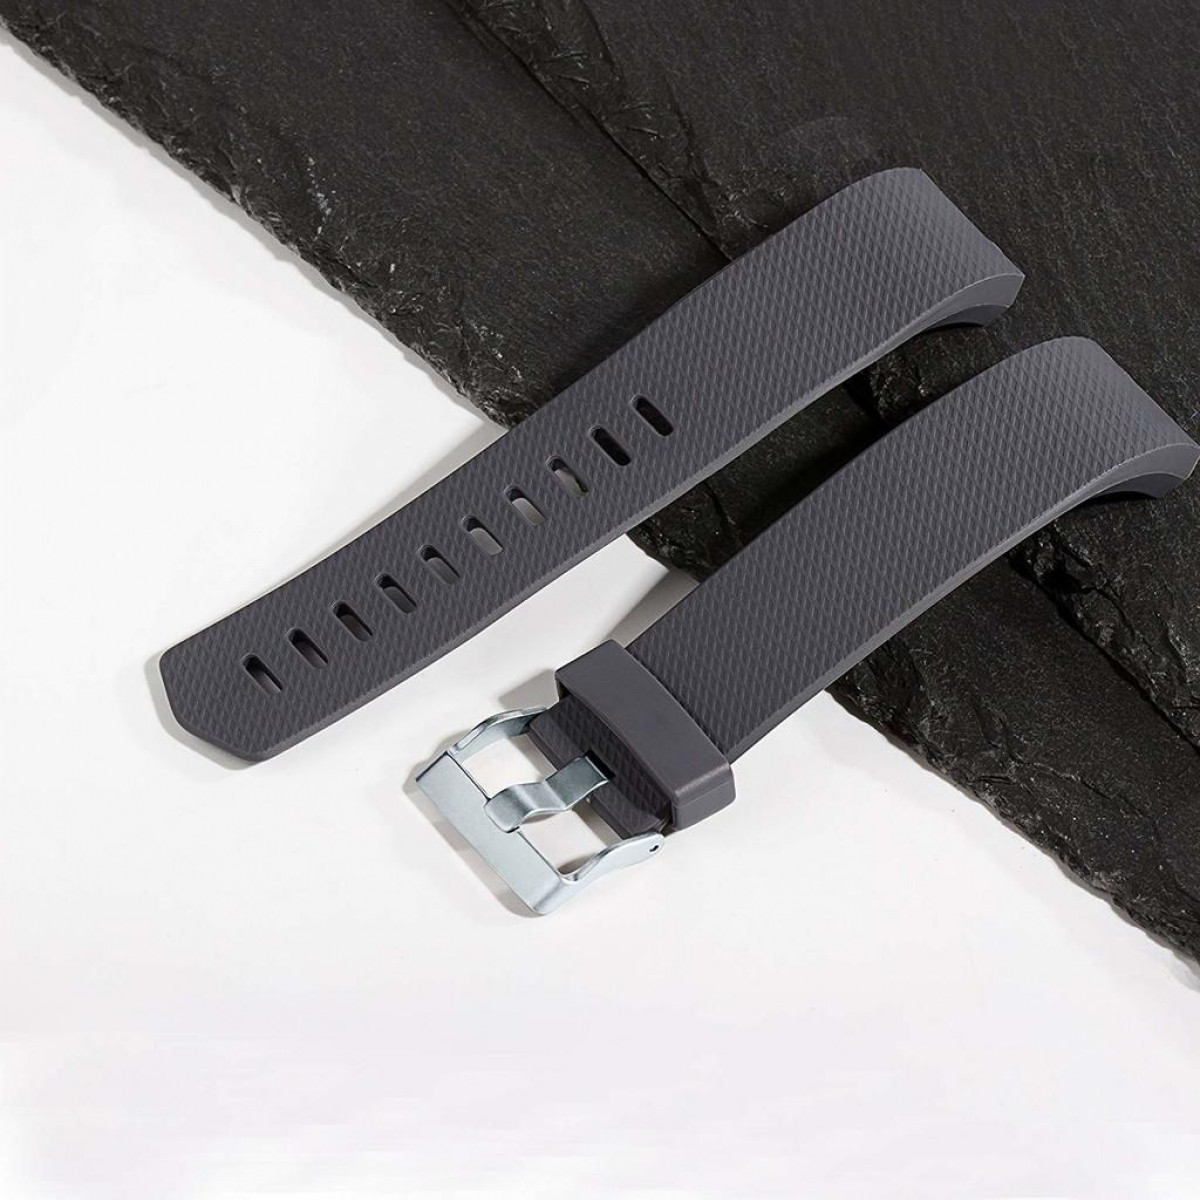 INF Fitbit Charge 2 Armband, schwarz/grau/weiß (S), 3er-Pack 2 Charge schwarz/grau/weiß Fitbit, (S), Armband